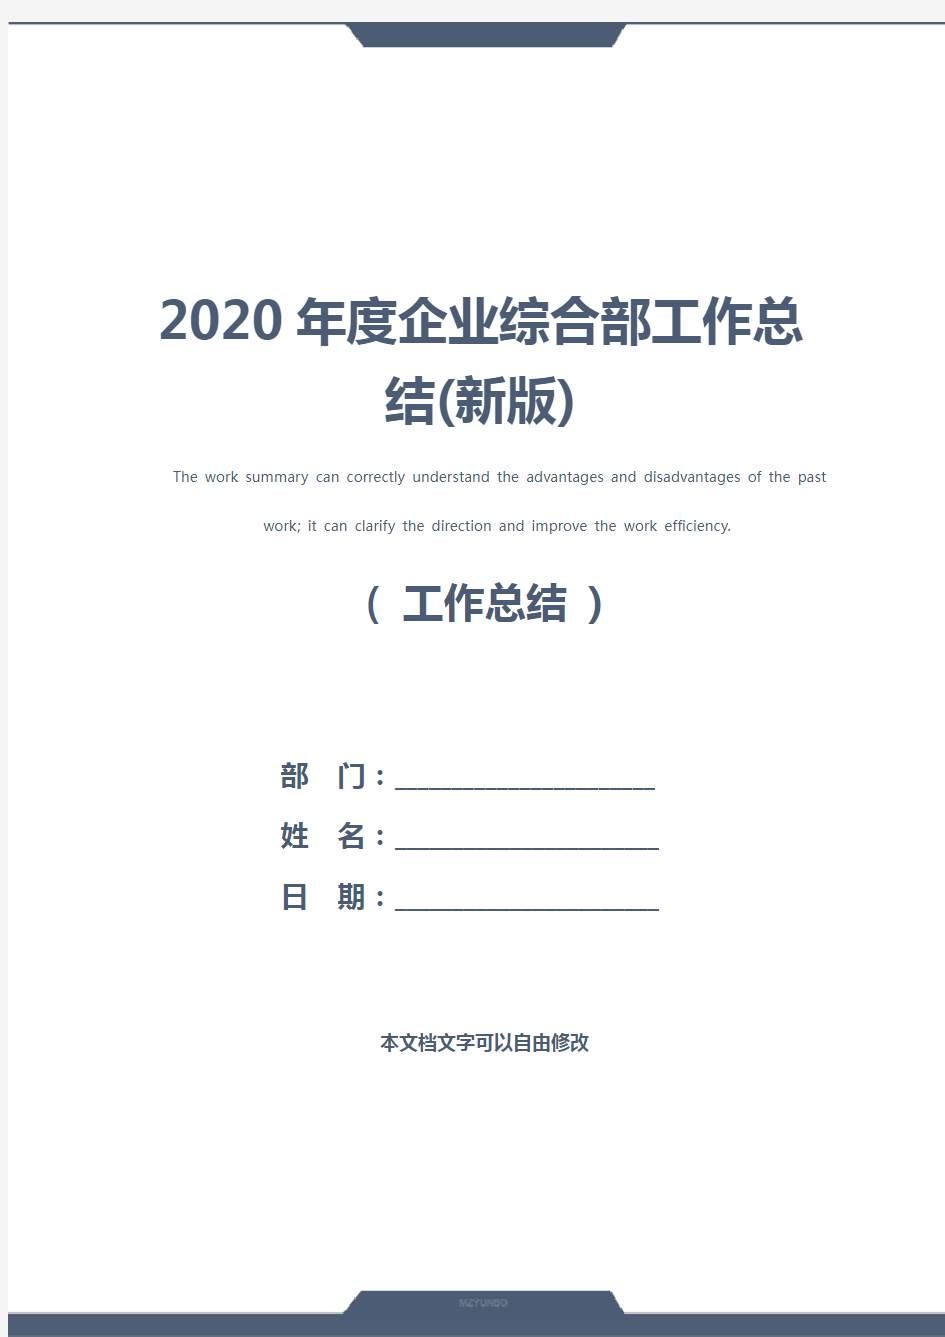 2020年度企业综合部工作总结(新版)